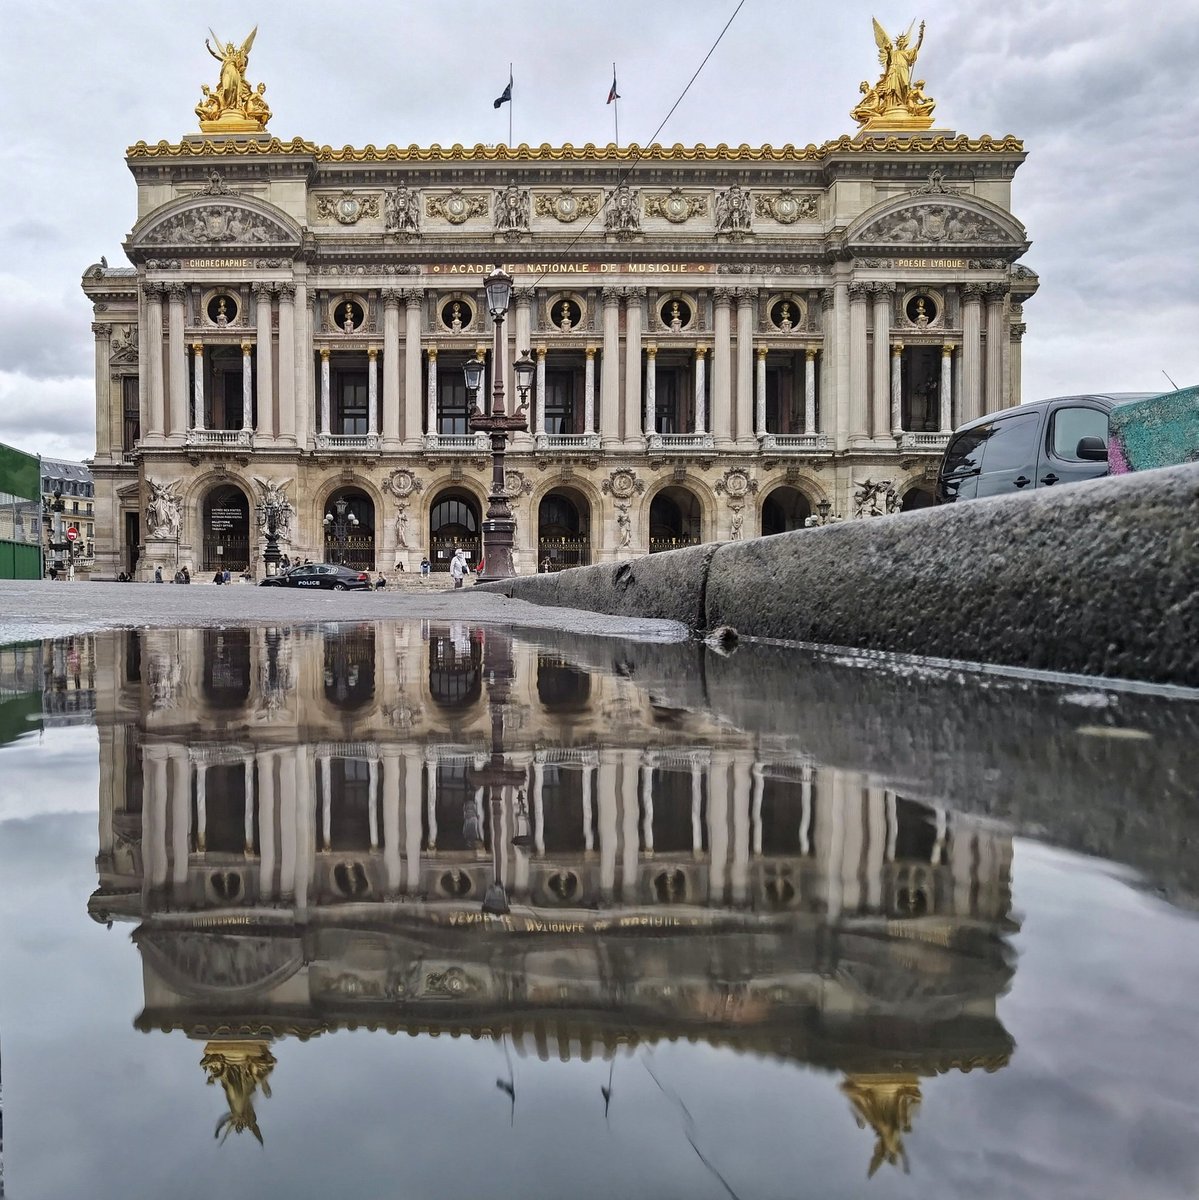 Opera de Paris

_____
@ParisJeTaime #parisjetaime @operadeparis #opera @le_Parisien @Paris @VisitParisIdf @visitparisreg @ParisZigZag @vivreparis @VivreParis_ @ParisBouge @QueFaireAParis #streetphotography #photography #photooftheday #Paris #france #travel #reflection #street